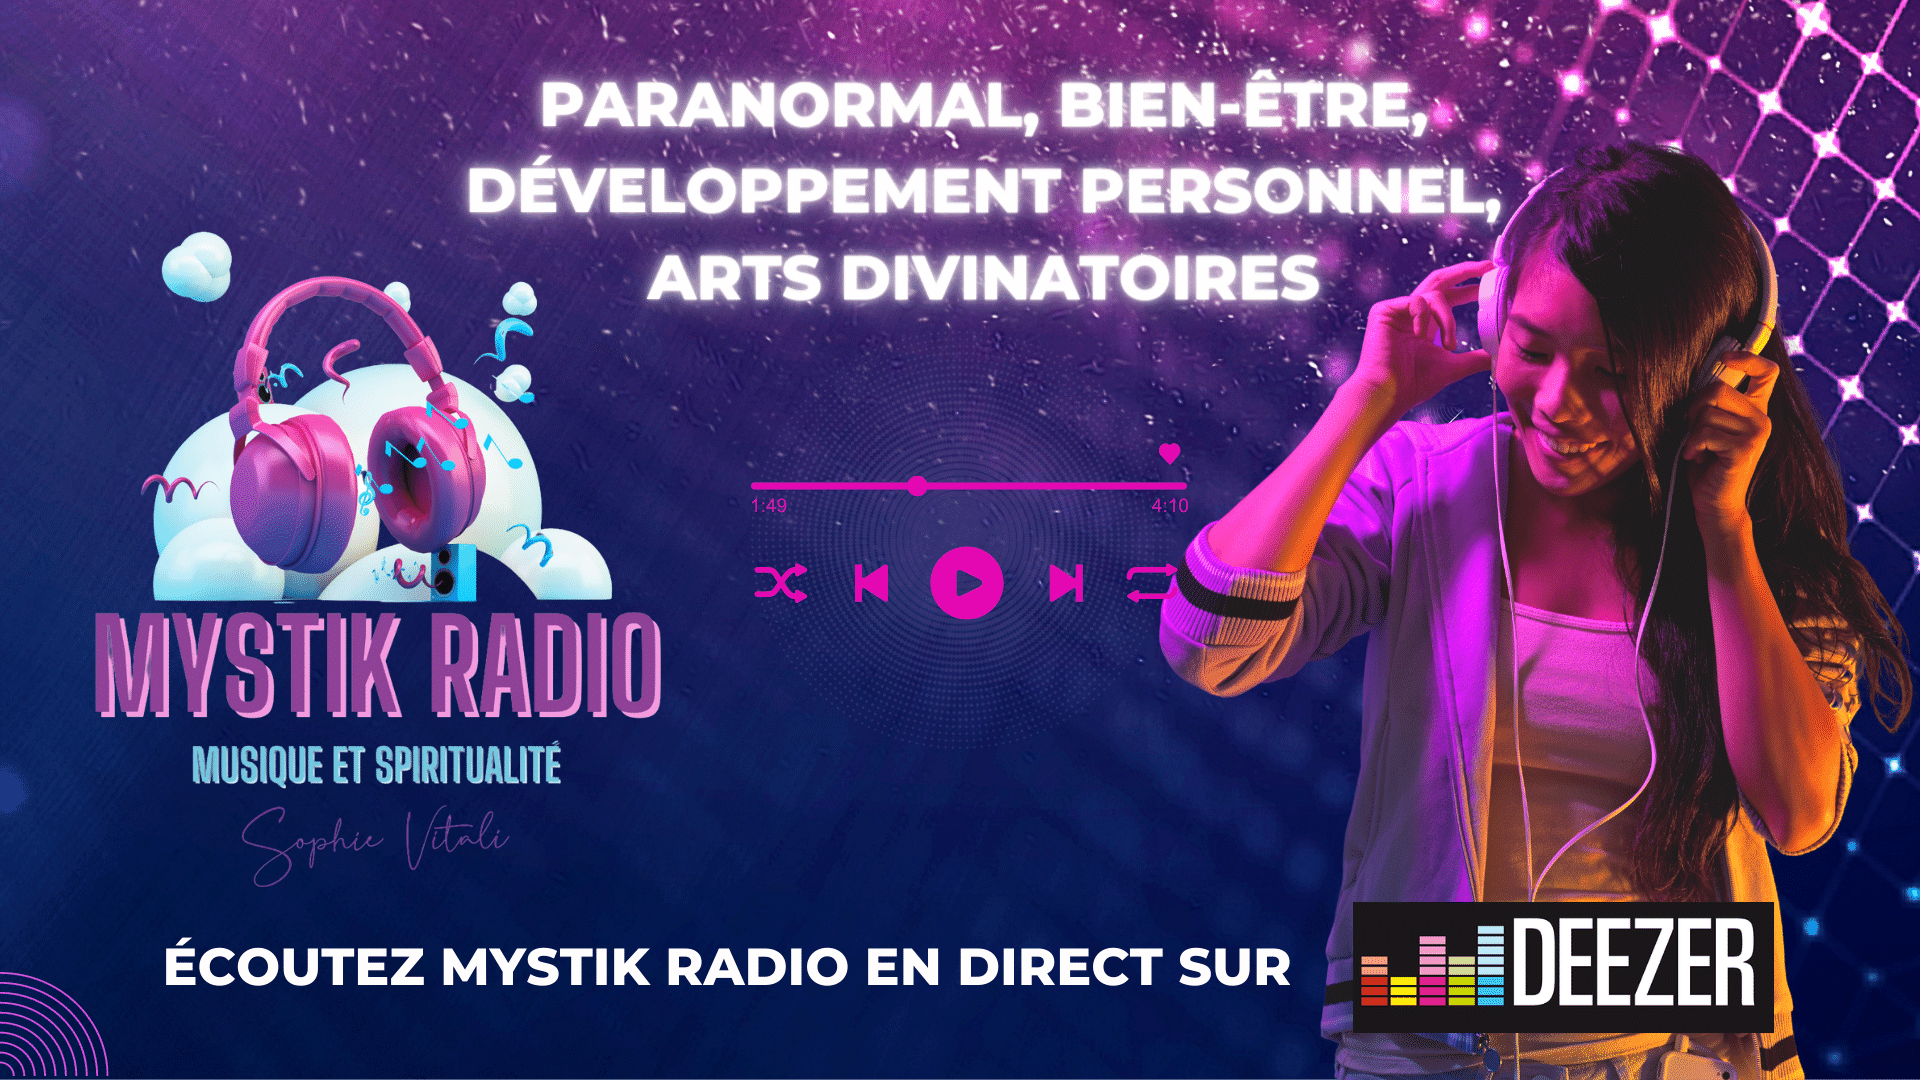 Mystik Radio : voyance, paranormal, bien-être, infos, cinéma, musique, spiritualité, fun | Sophie Vitali voyante par téléphone